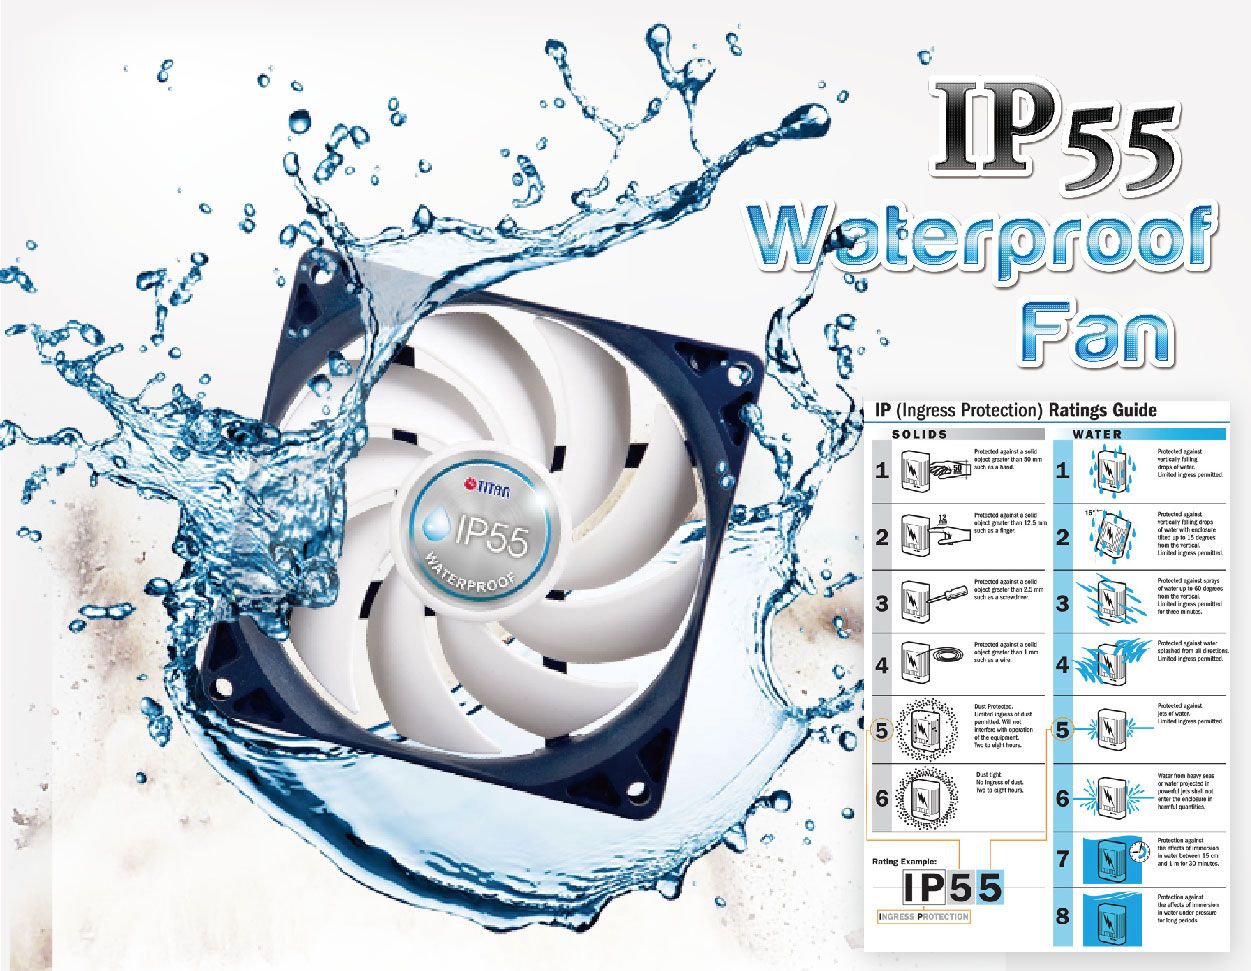 IP55 waterdichte ventilatorventilator is de cruciale functie van RV-ventilatorventilator